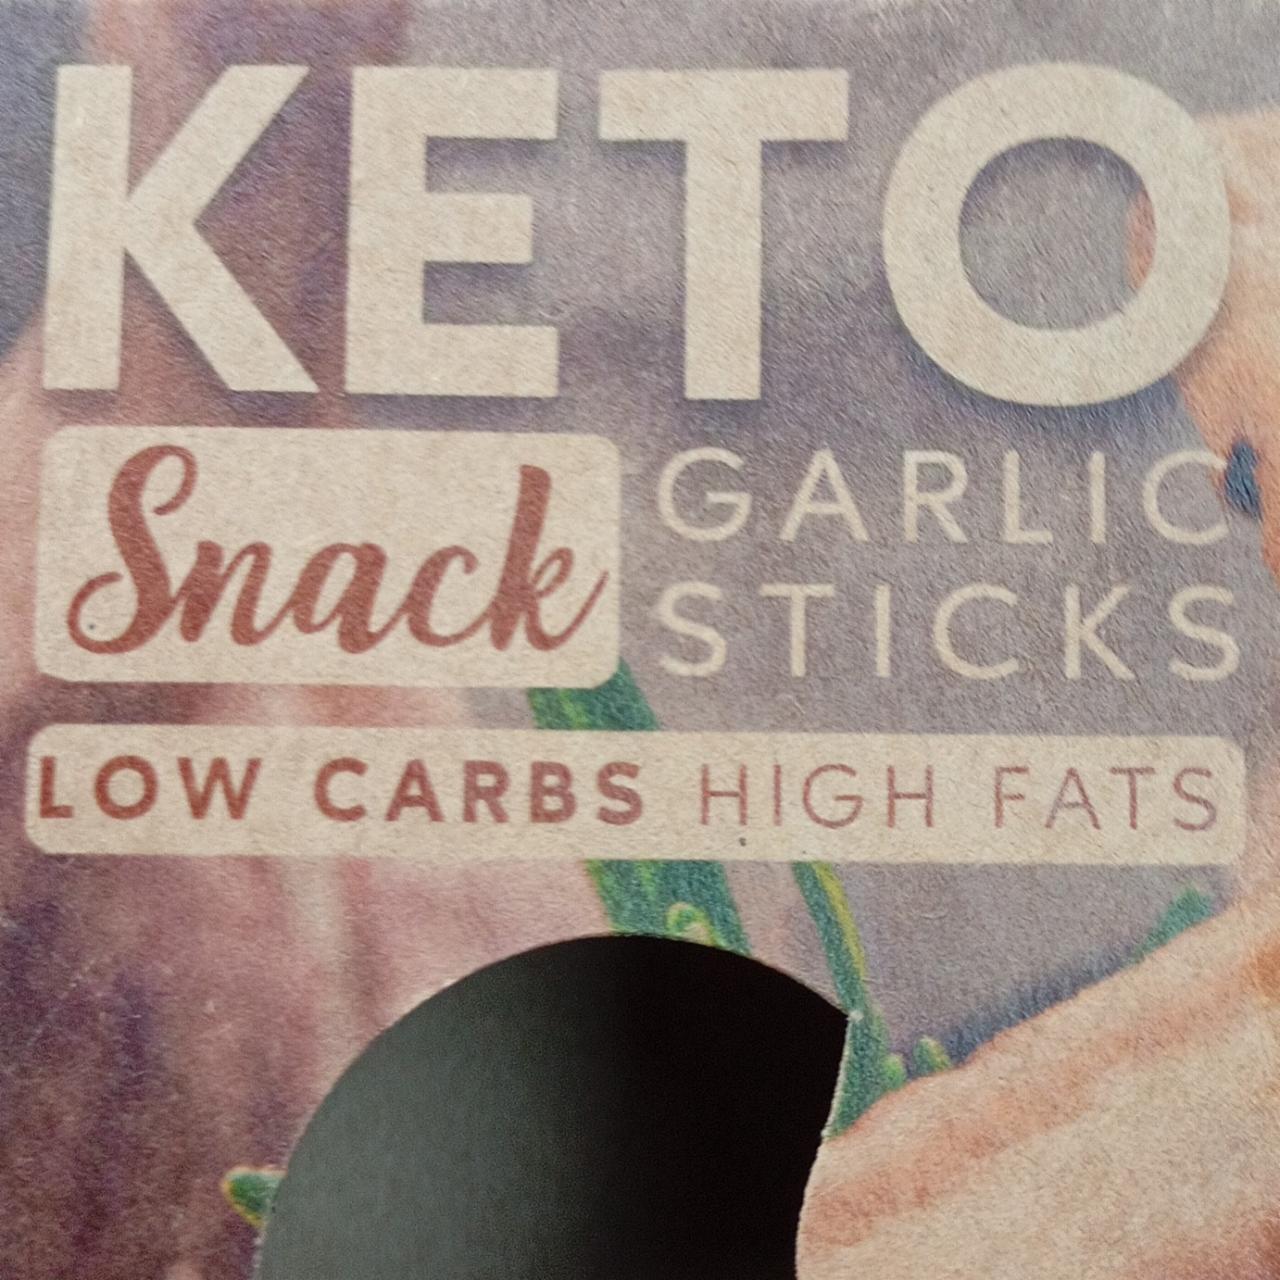 Zdjęcia - Keto garlic sticks snack Amix